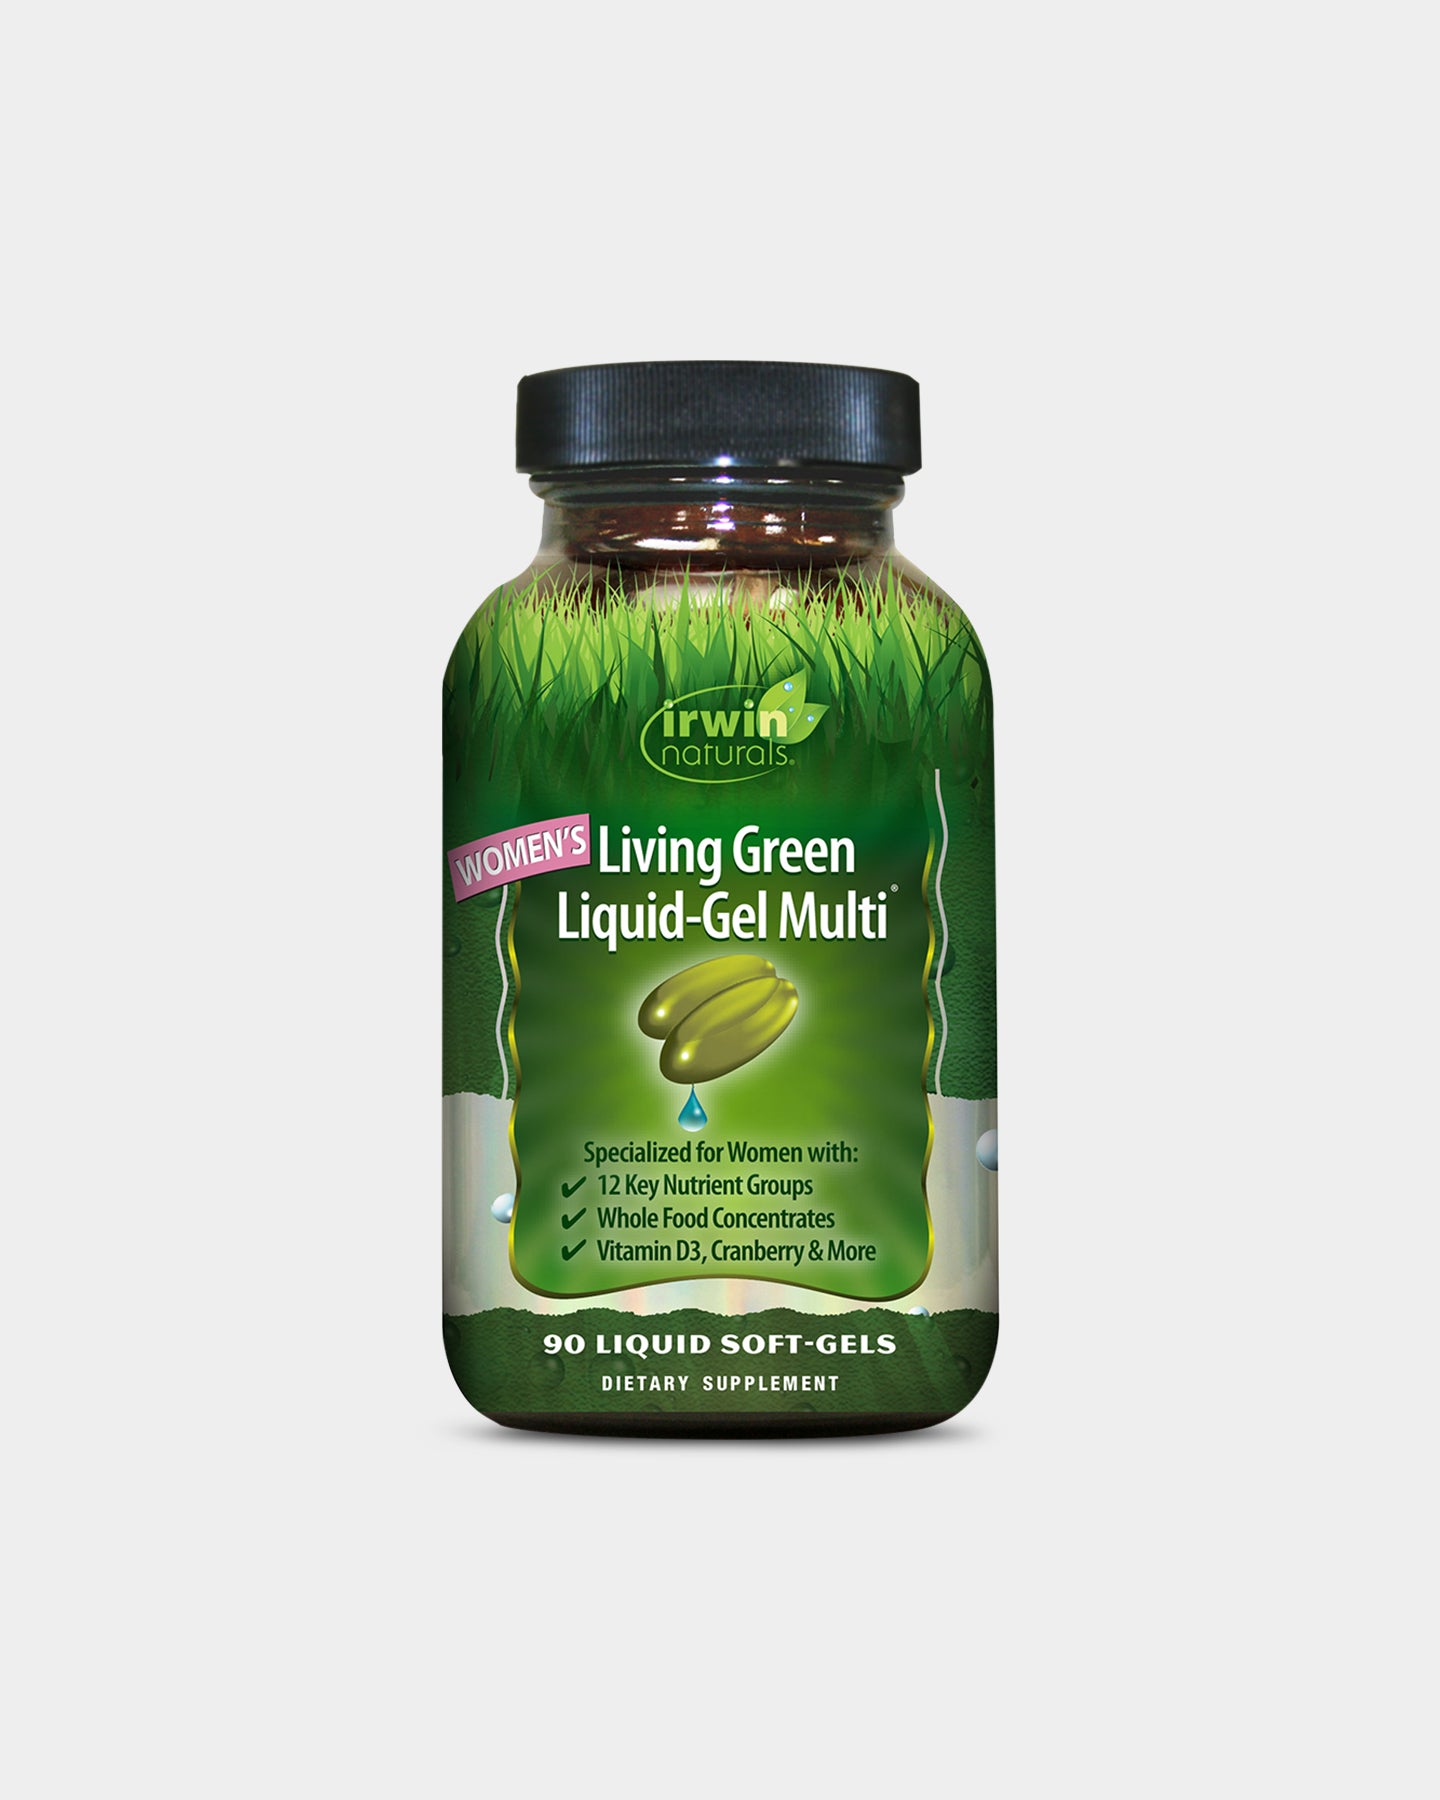 Image of Irwin Naturals Women's Living Green Liquid-Gel Multi